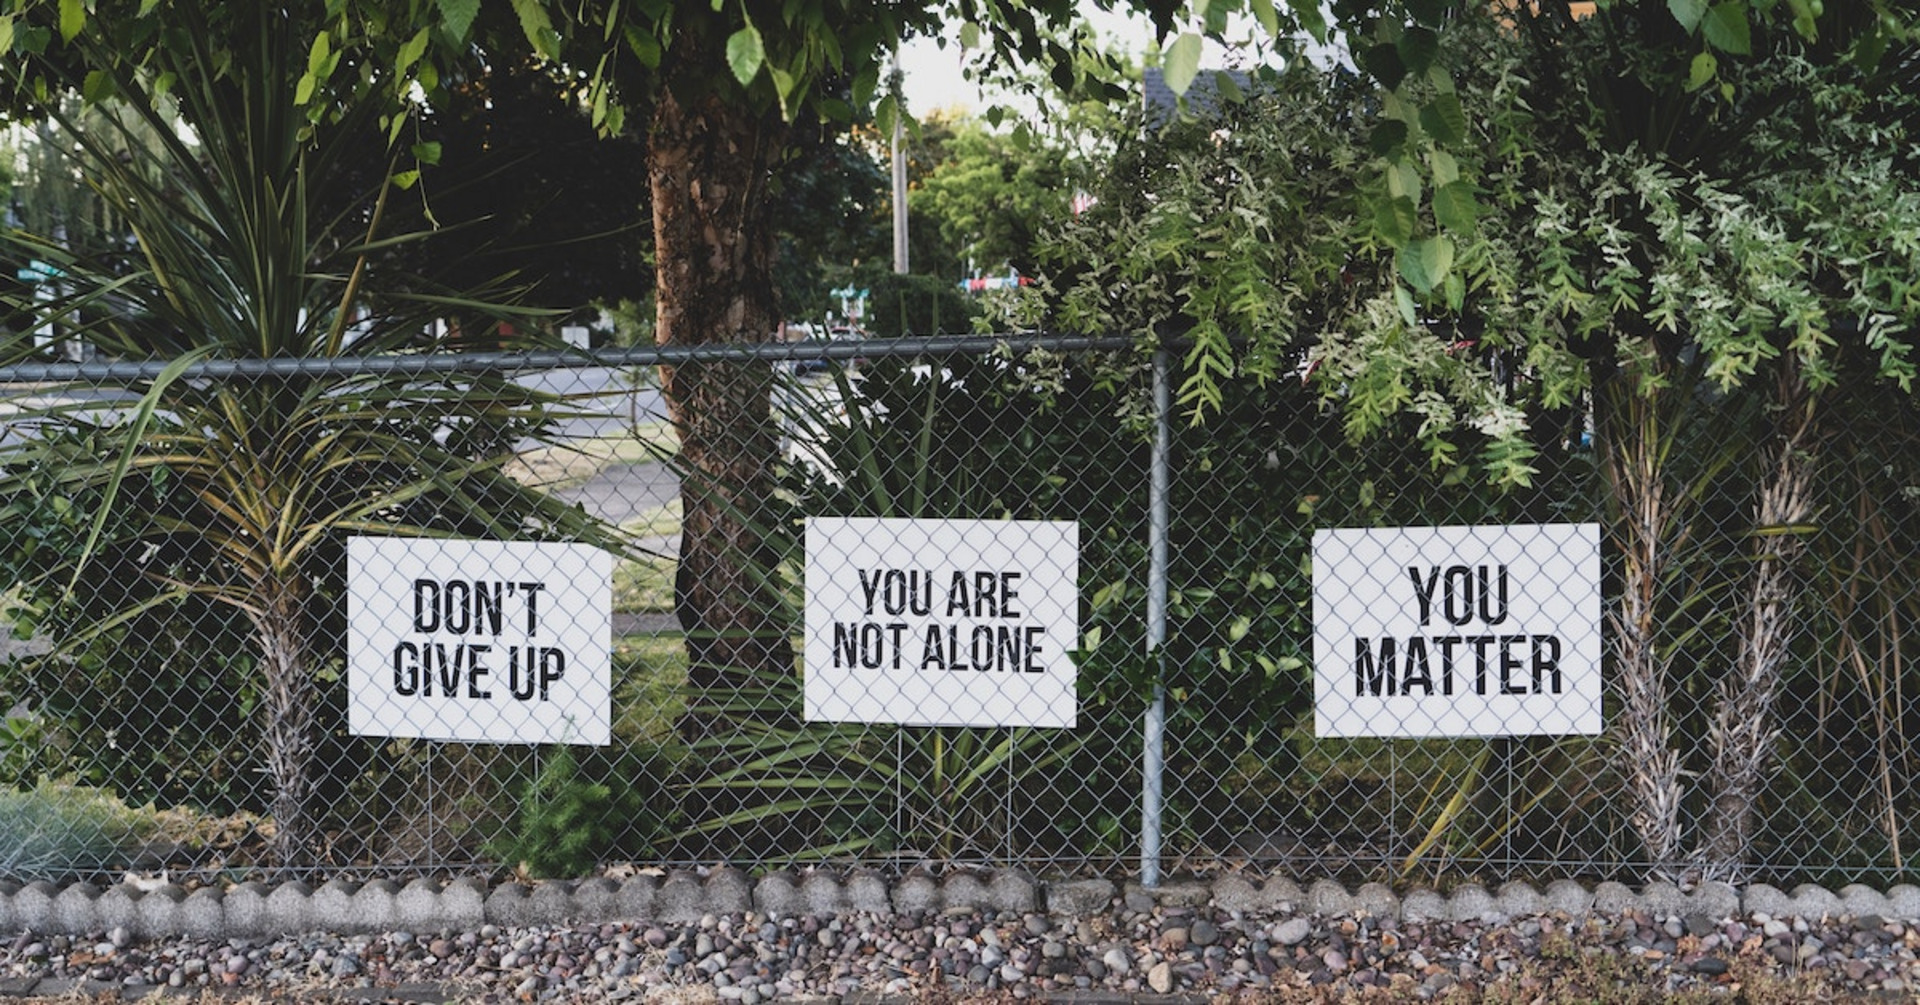 Drei Schilder mit den Sprüchen "Don't give up","You are not alone" und "You matter" vor ein paar Büschen.